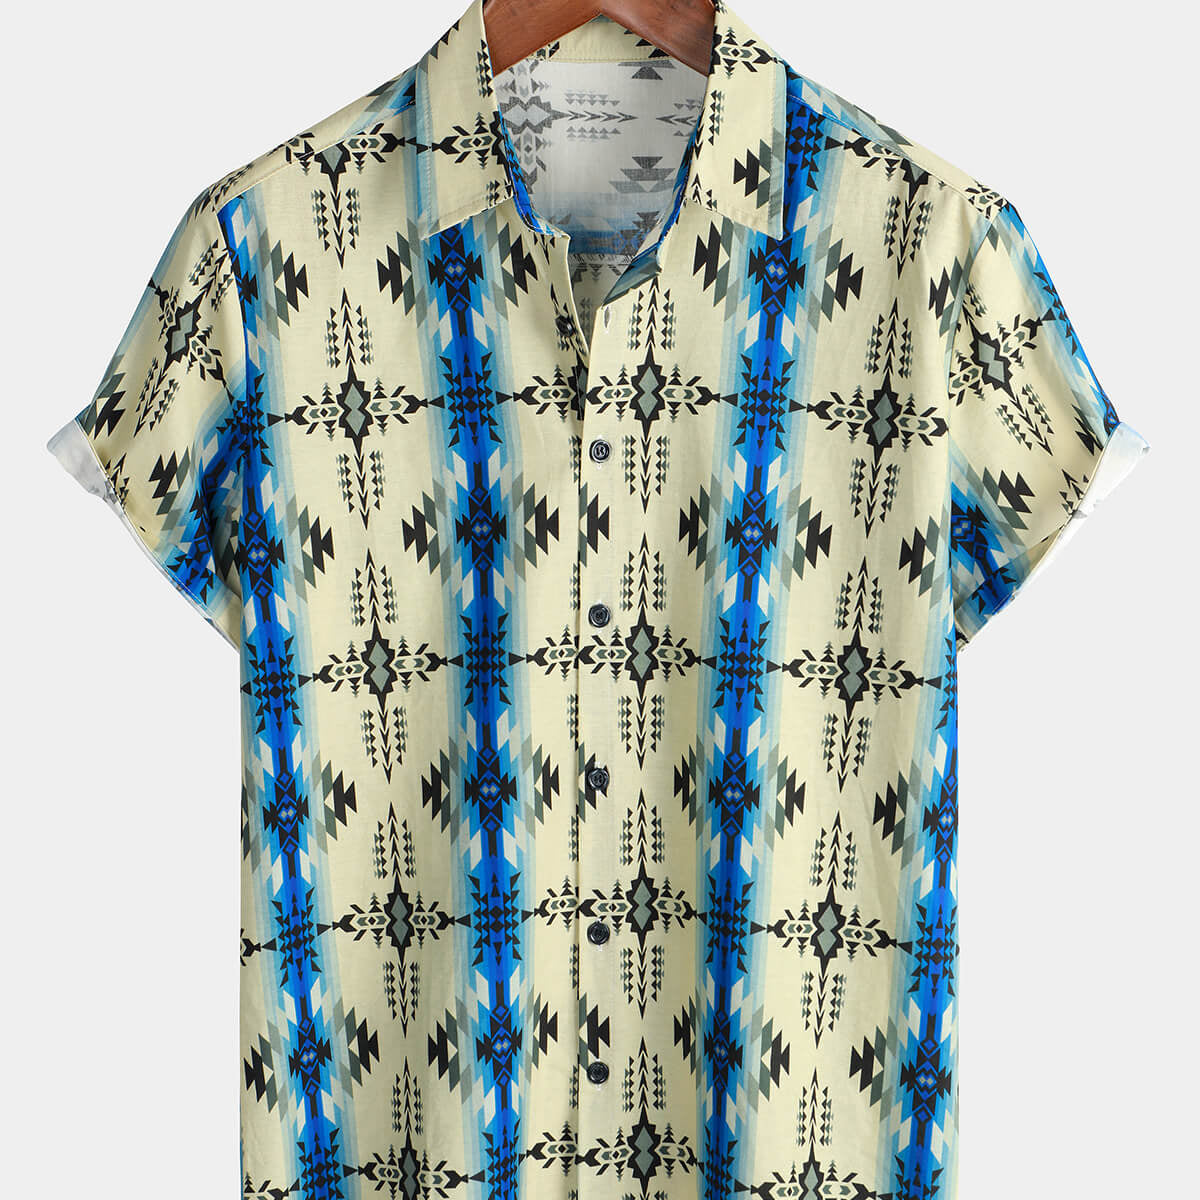 Chemise boutonnée vintage à manches courtes pour hommes des années 70, imprimé aztèque rétro